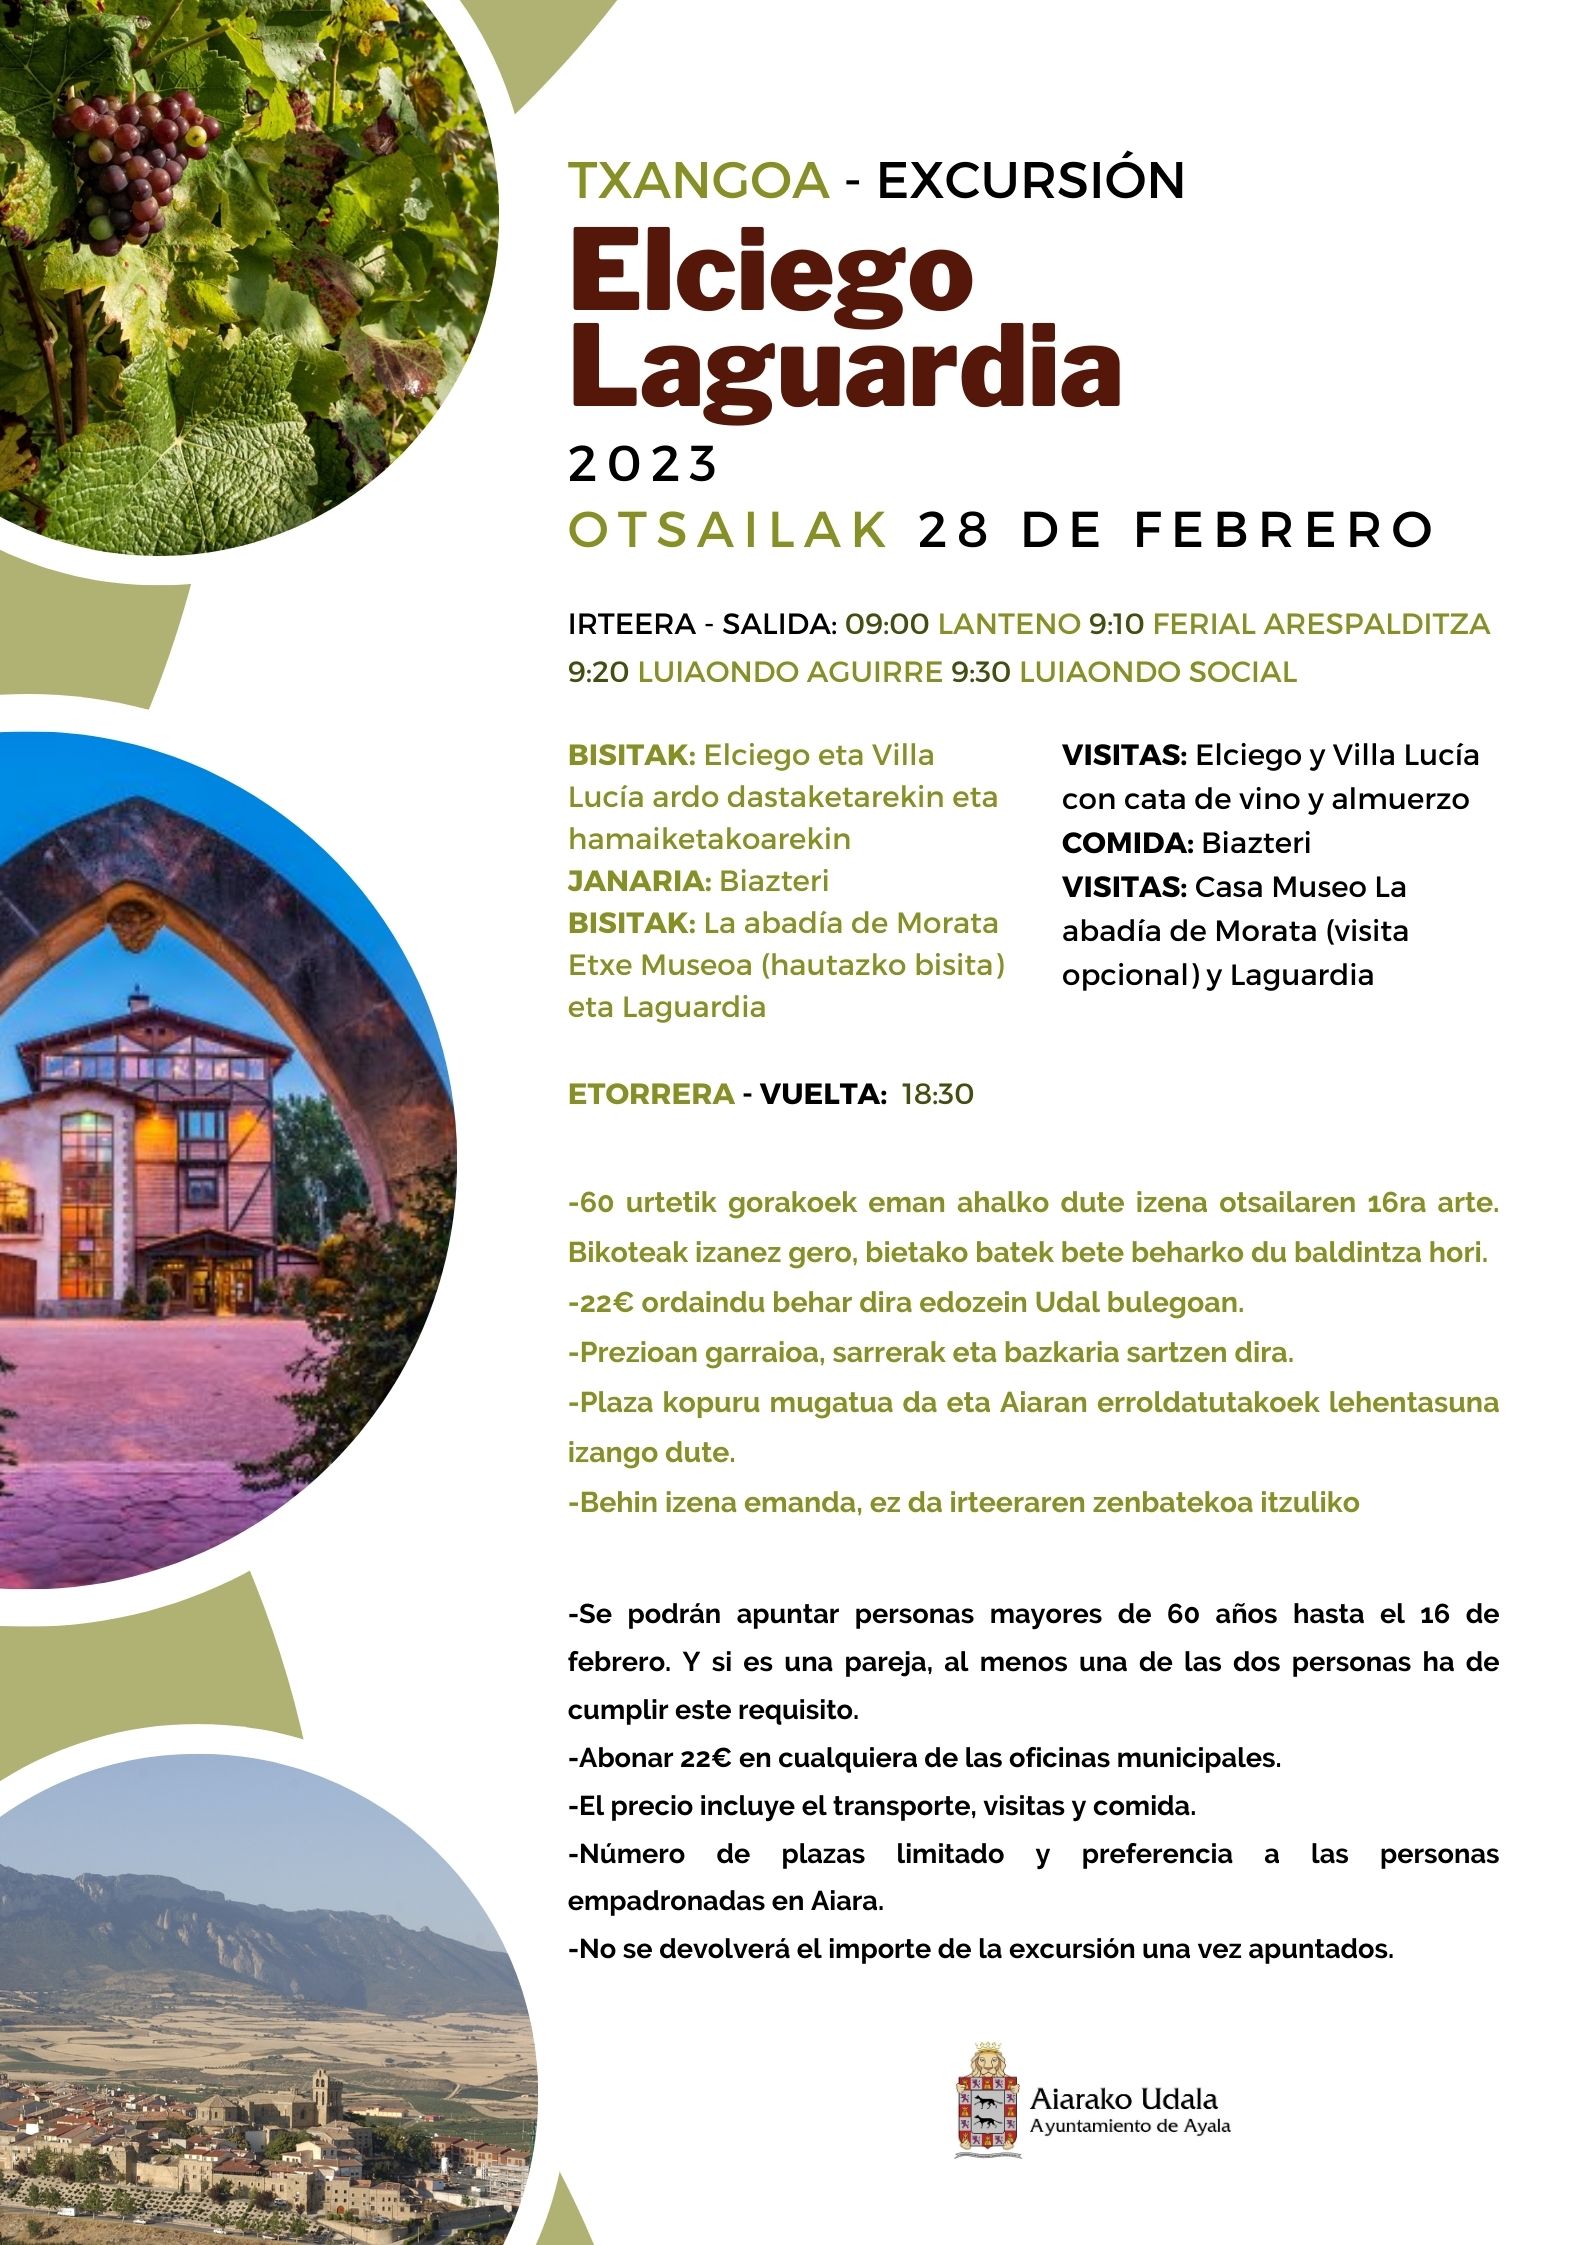 Excursión Elciego-Laguardia